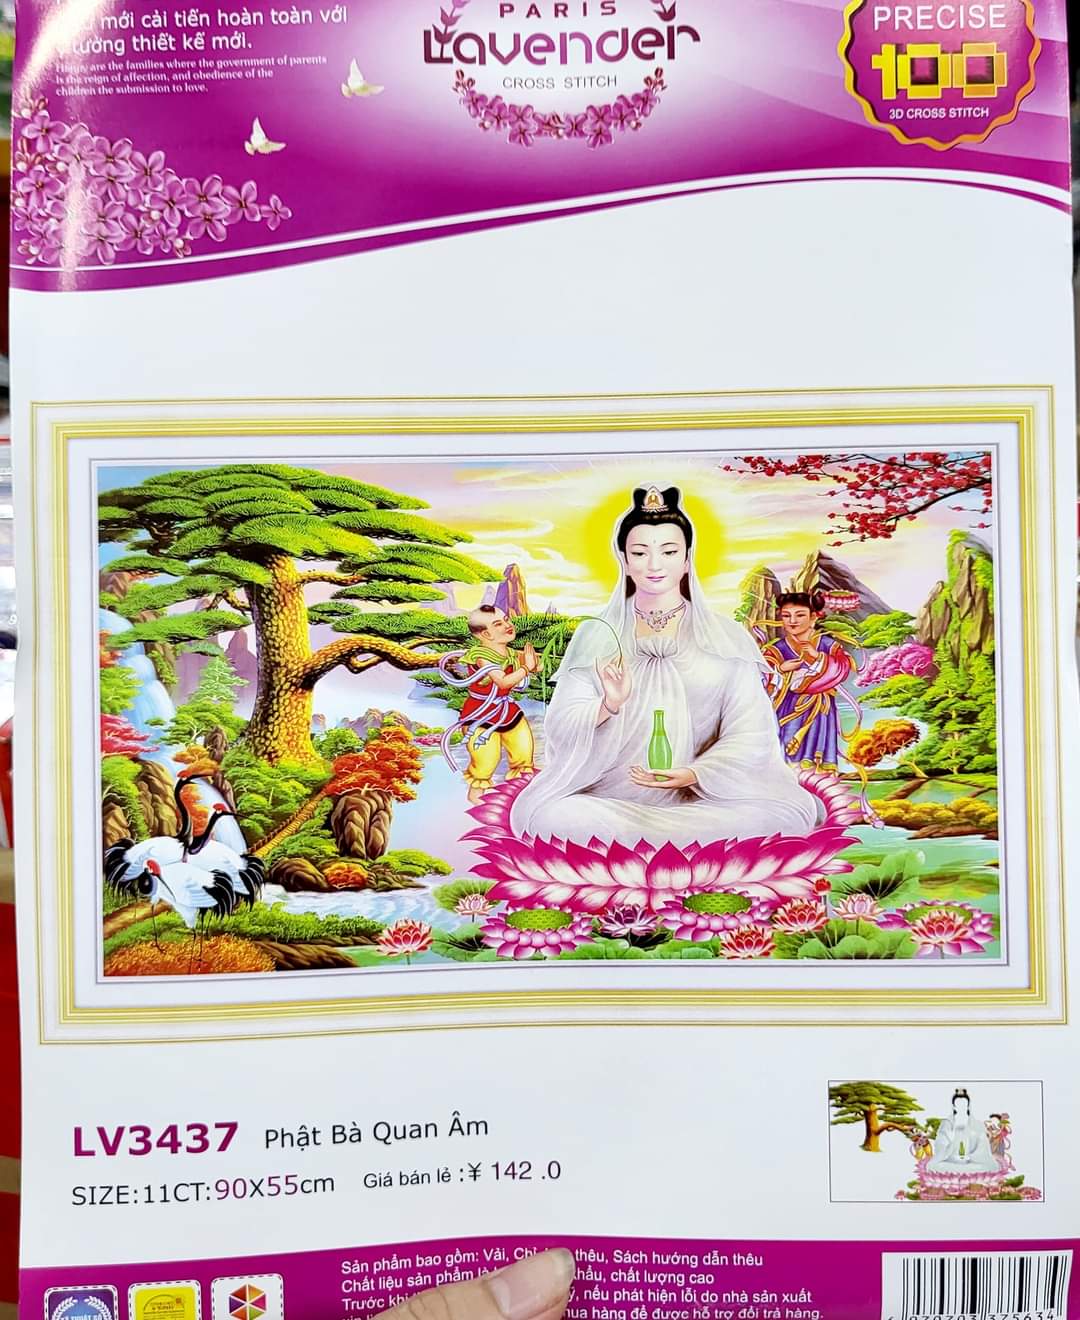 39 Hình nền tượng Mẹ Quan Âm Bồ Tát đẹp nhất  Tải hình nền điện thoại Phật  Quan Âm 3d MỚI